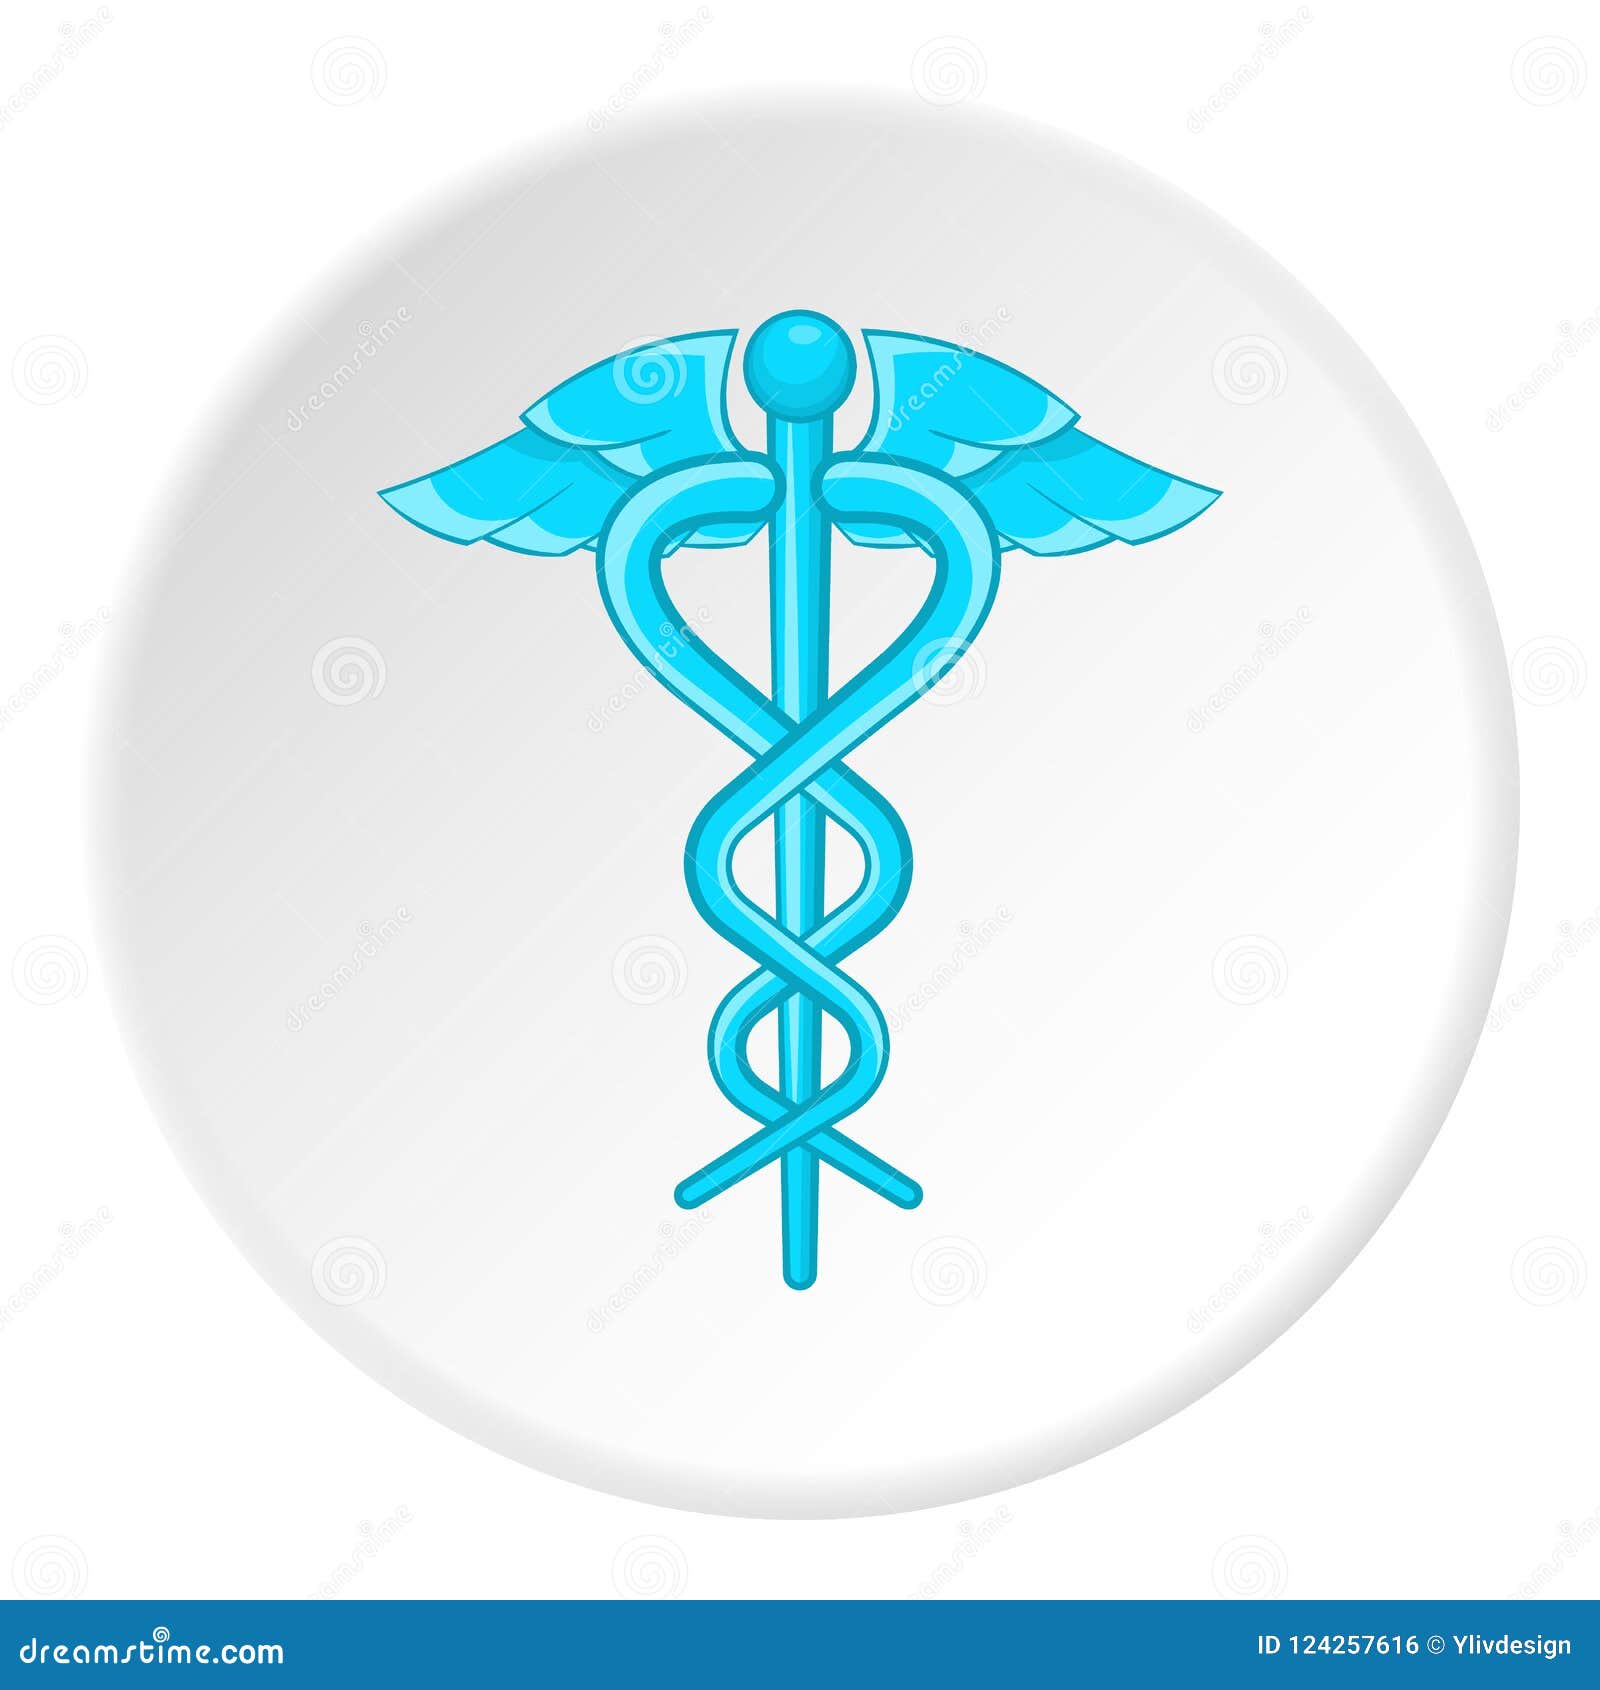 Medical Emblem Snake Icon, Cartoon Style Stock Illustration ...